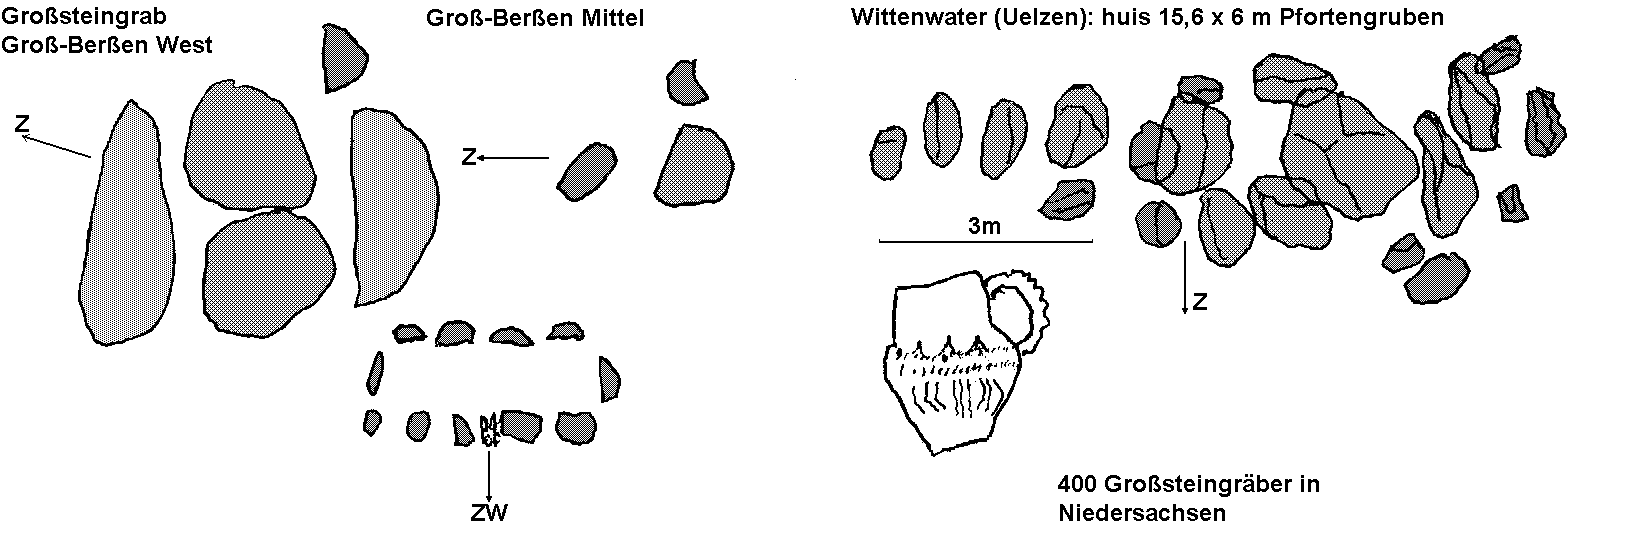 Grosteingrber bei Gro-Beren und Uelzen / Hunebedden bij Gro-Beren en Uelzen / Alles couvertes chez Gro-Beren et Uelzen / Tumbas megalticas cerca de Gro-Beren y Uelzen